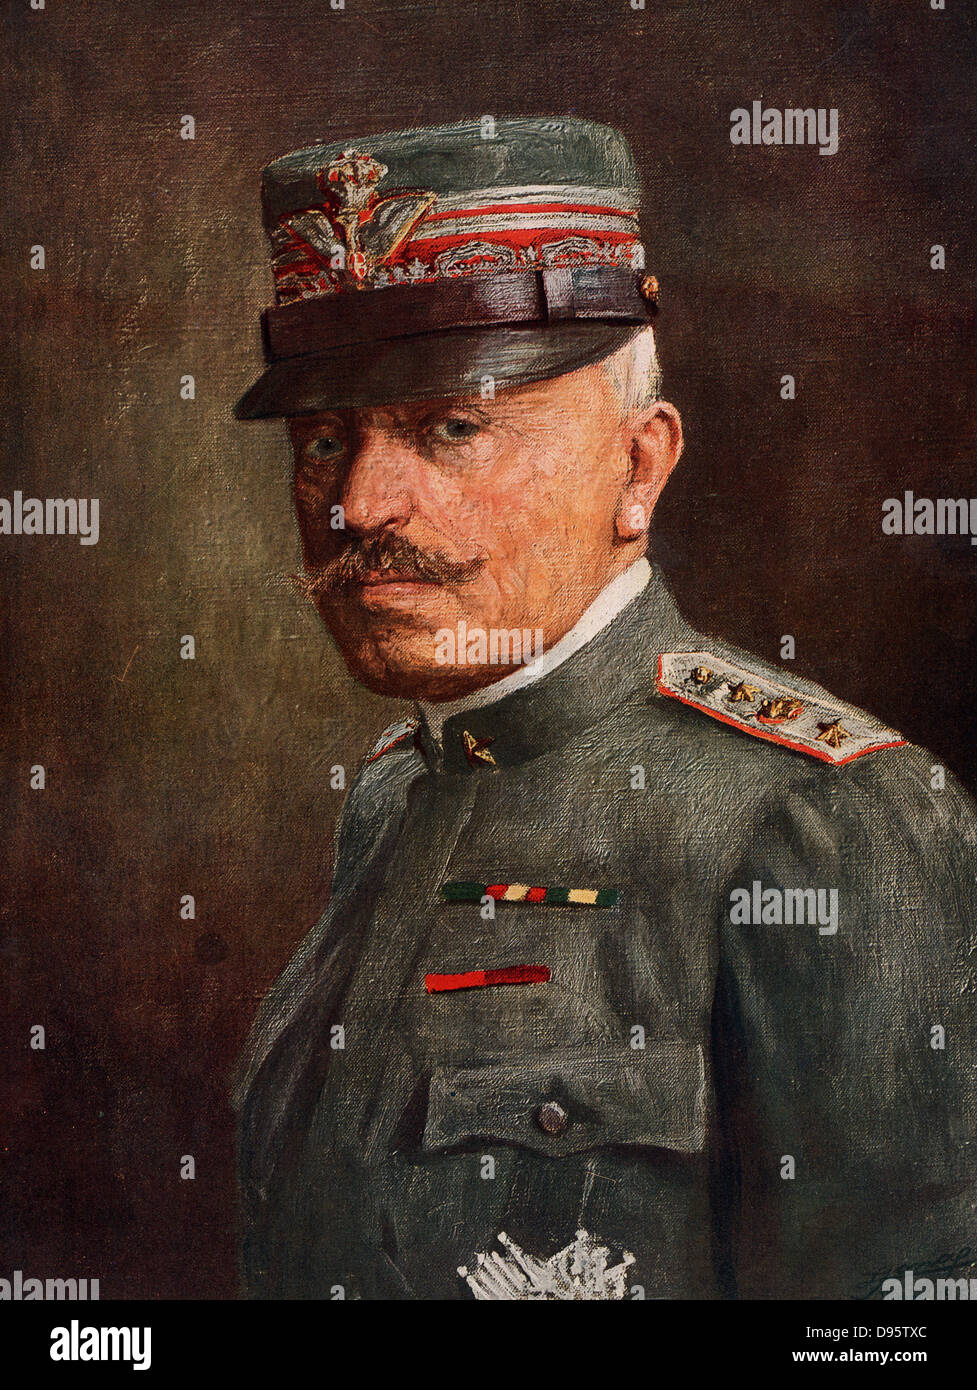 General Luigi Cadorna (1850-1928), italienische Armee Officer, Chief-of-Personal der Italienischen Armee bei Ausbruch des Ersten Weltkrieges bis zu seiner Entlassung nach der Niederlage der Italiener bei Caporetto im Oktober 1917. Stockfoto